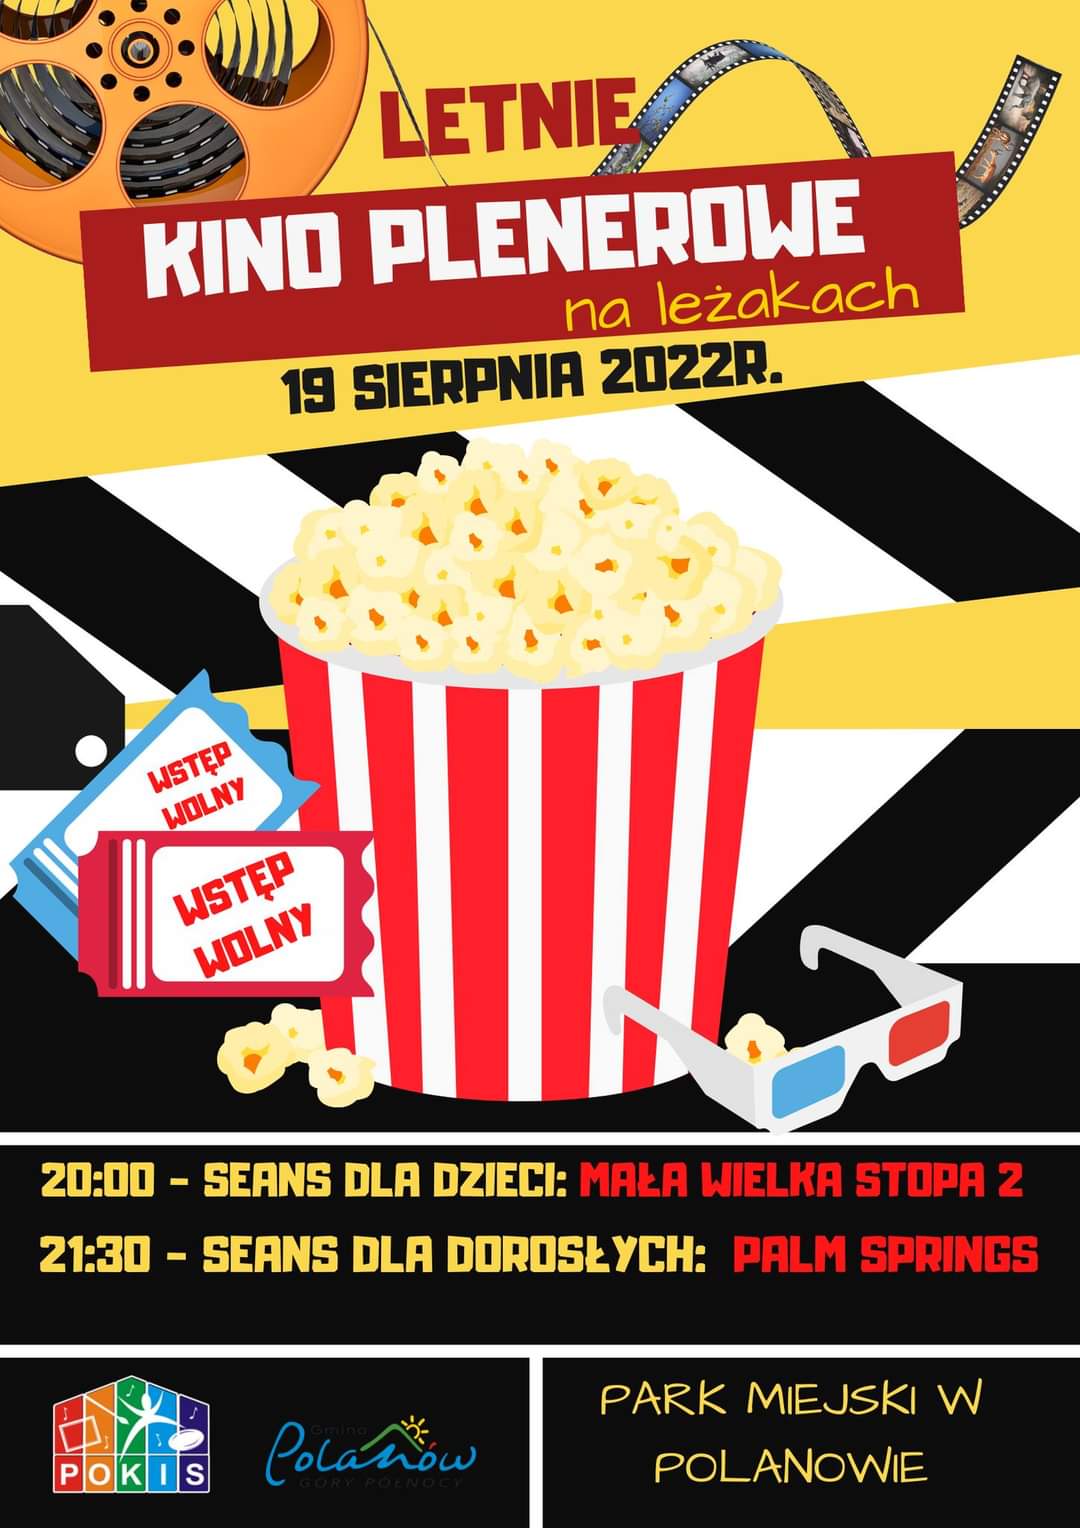 plakat zapraszający na letnie kino plenerowe na leżakach w Parku Miejskim w Polanowie 19 sierpnia 2022